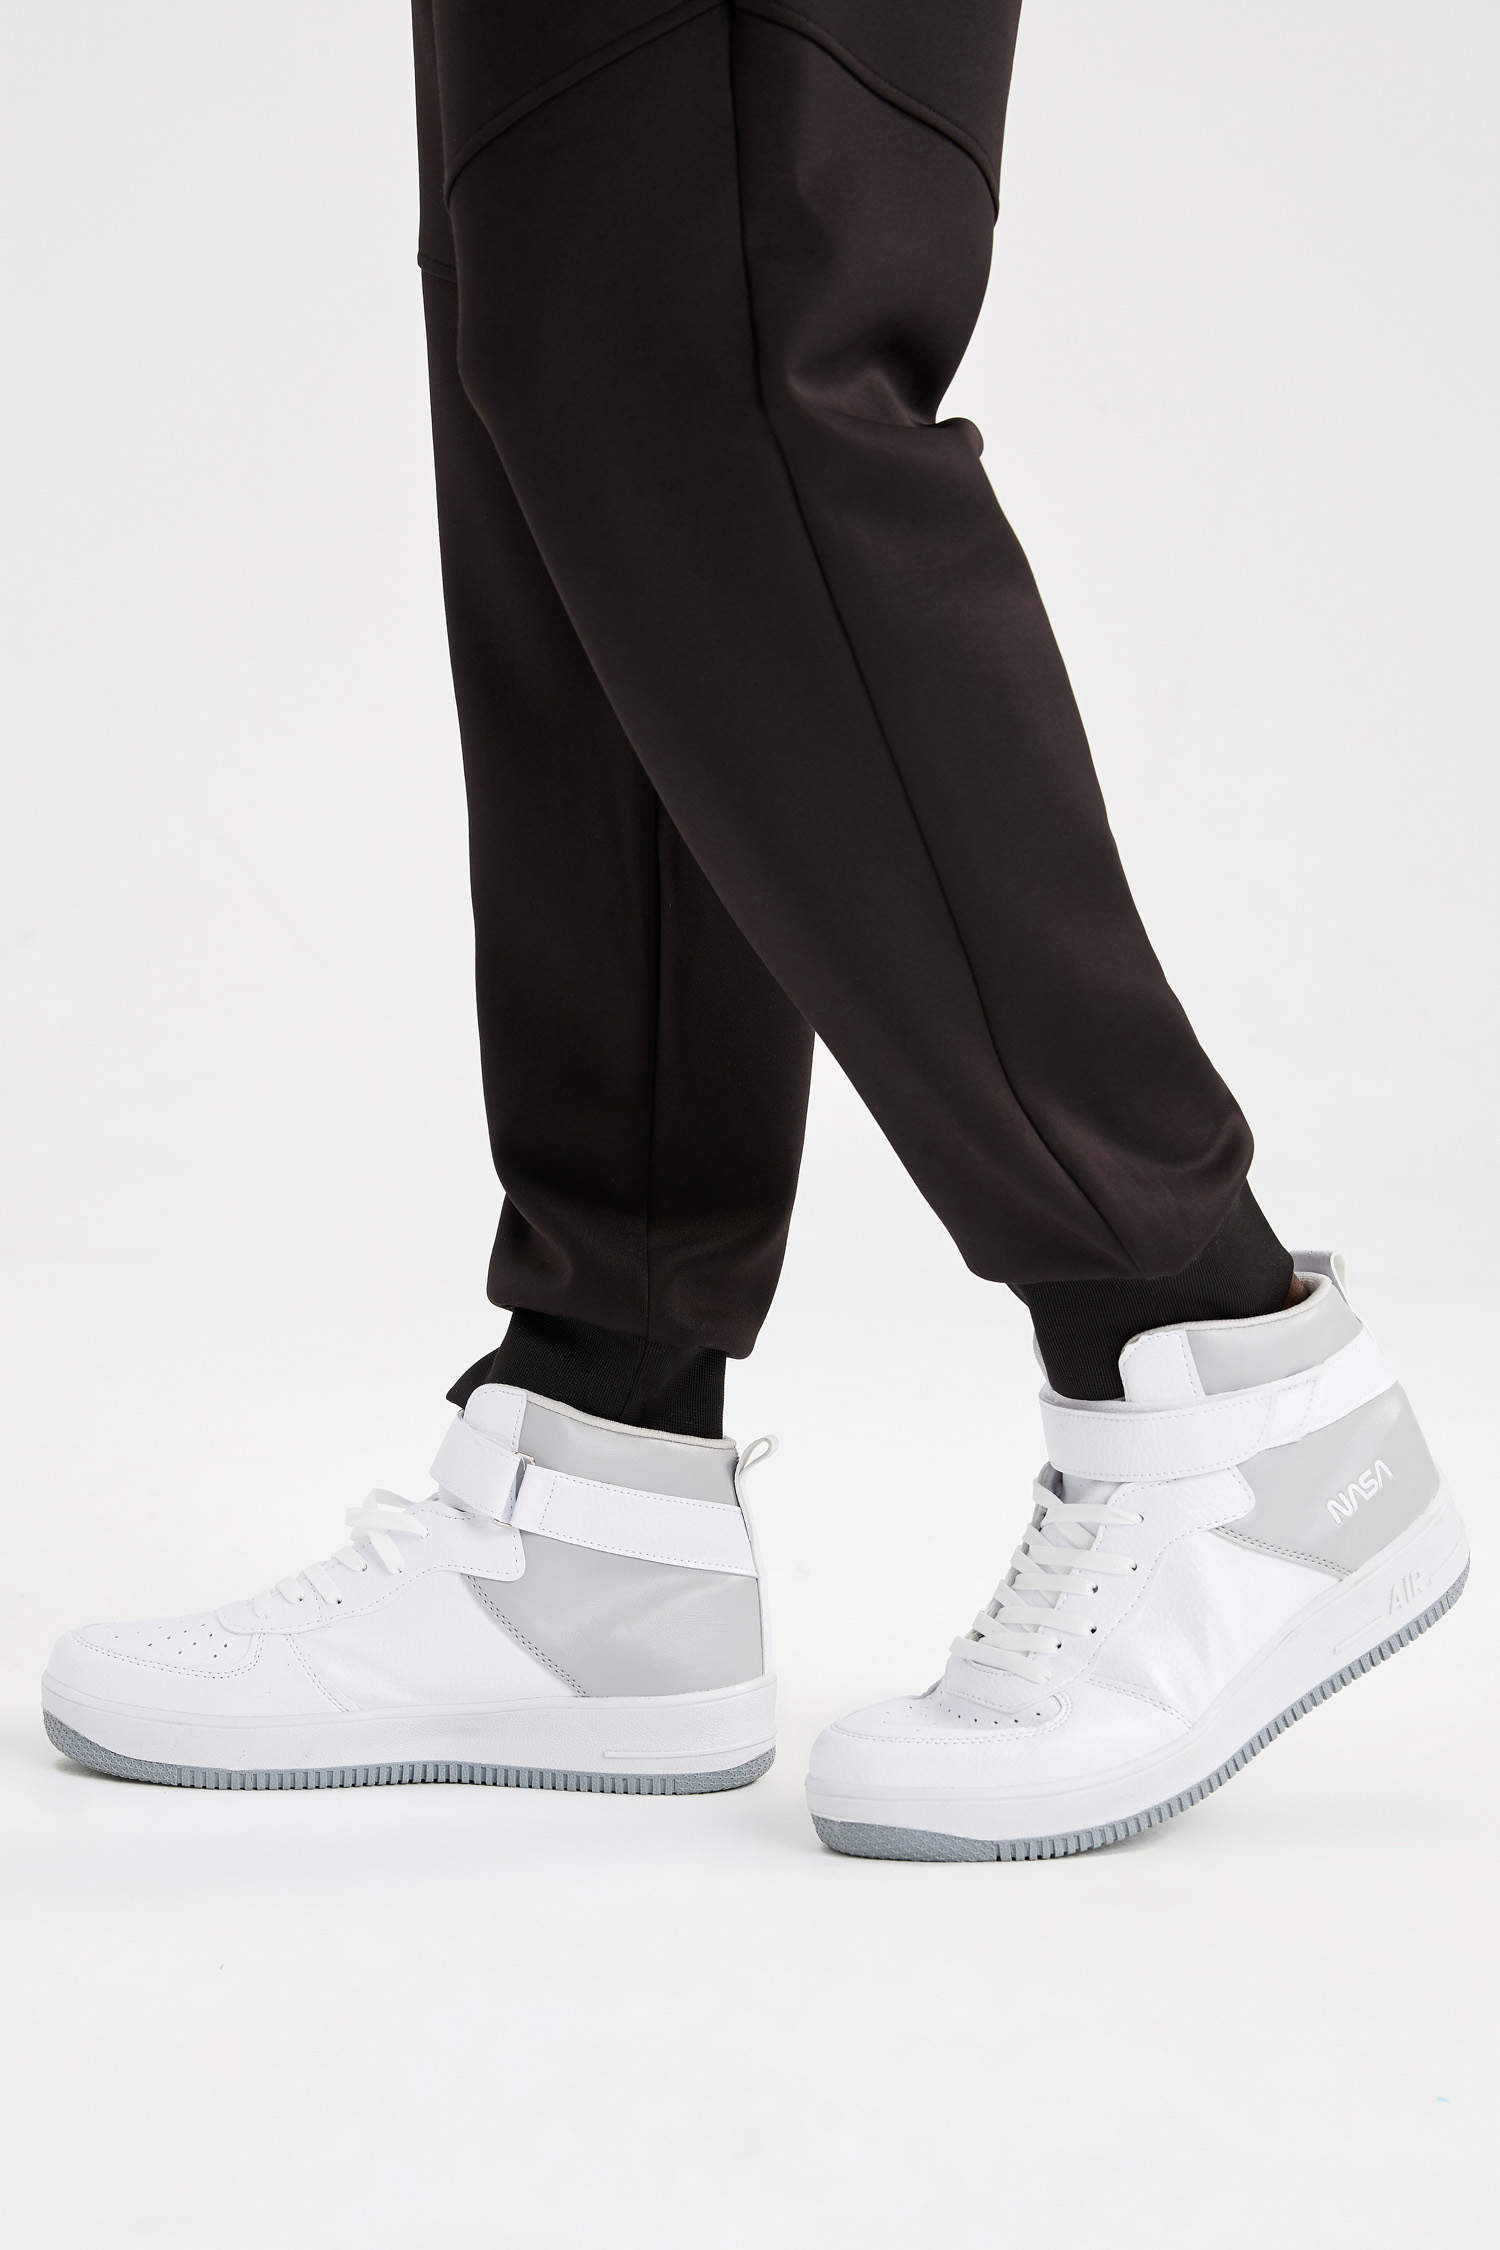 Defacto Erkek Nasa Lisanslı Suni Deri Bağcıklı Bilekli Sneaker Spor Ayakkabı. 2